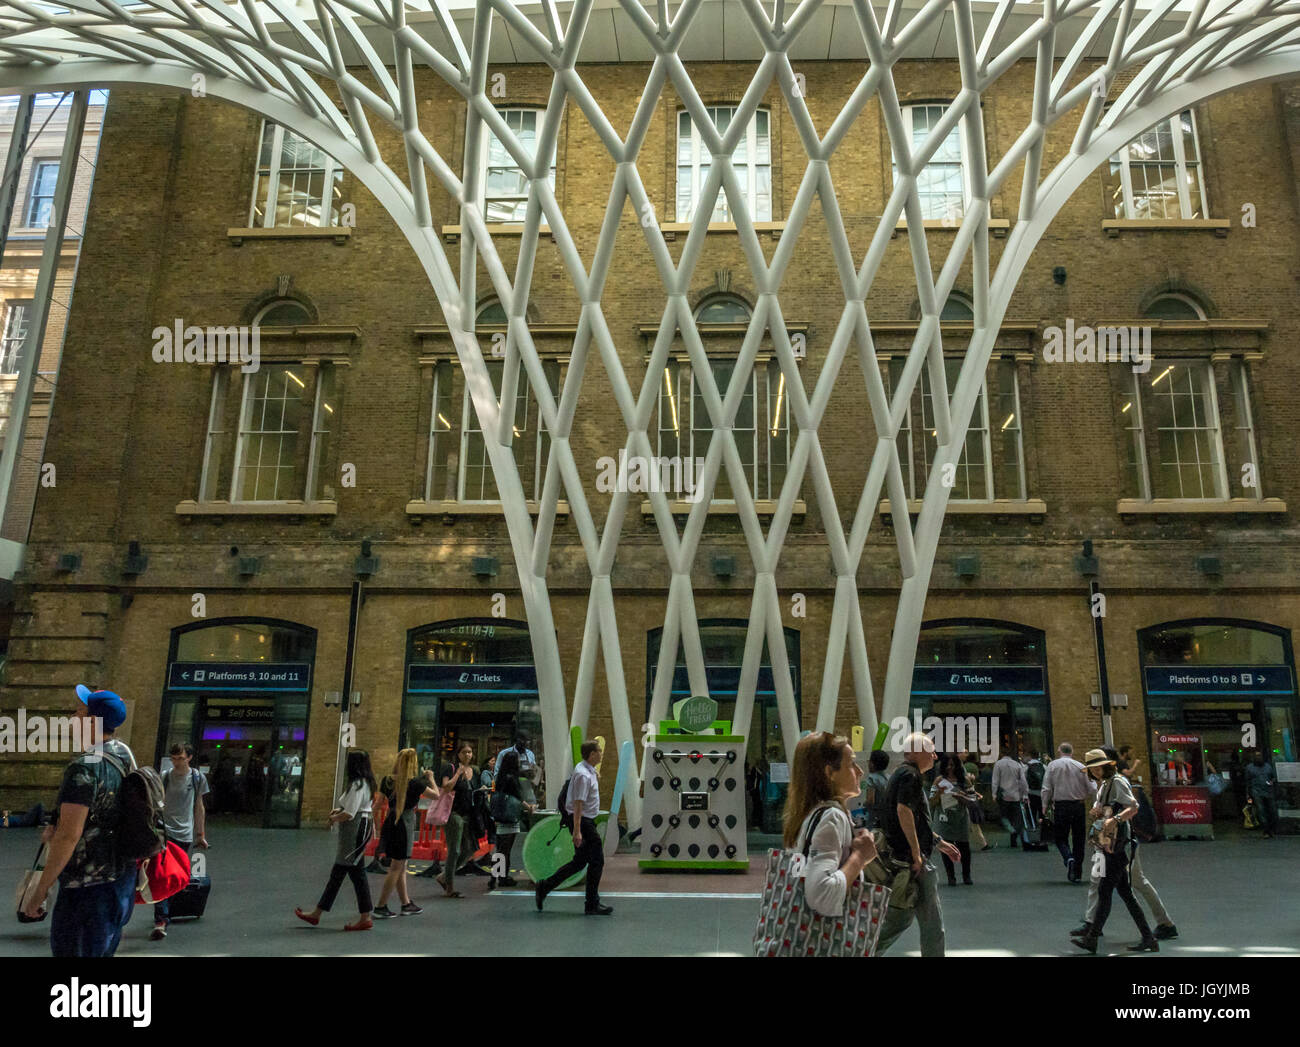 Die Menschen in der Halle am Bahnhof King's Cross, London, England, UK, vor der riesigen gewölbten Gitter Gitter Skulptur Dach von Arup Stockfoto